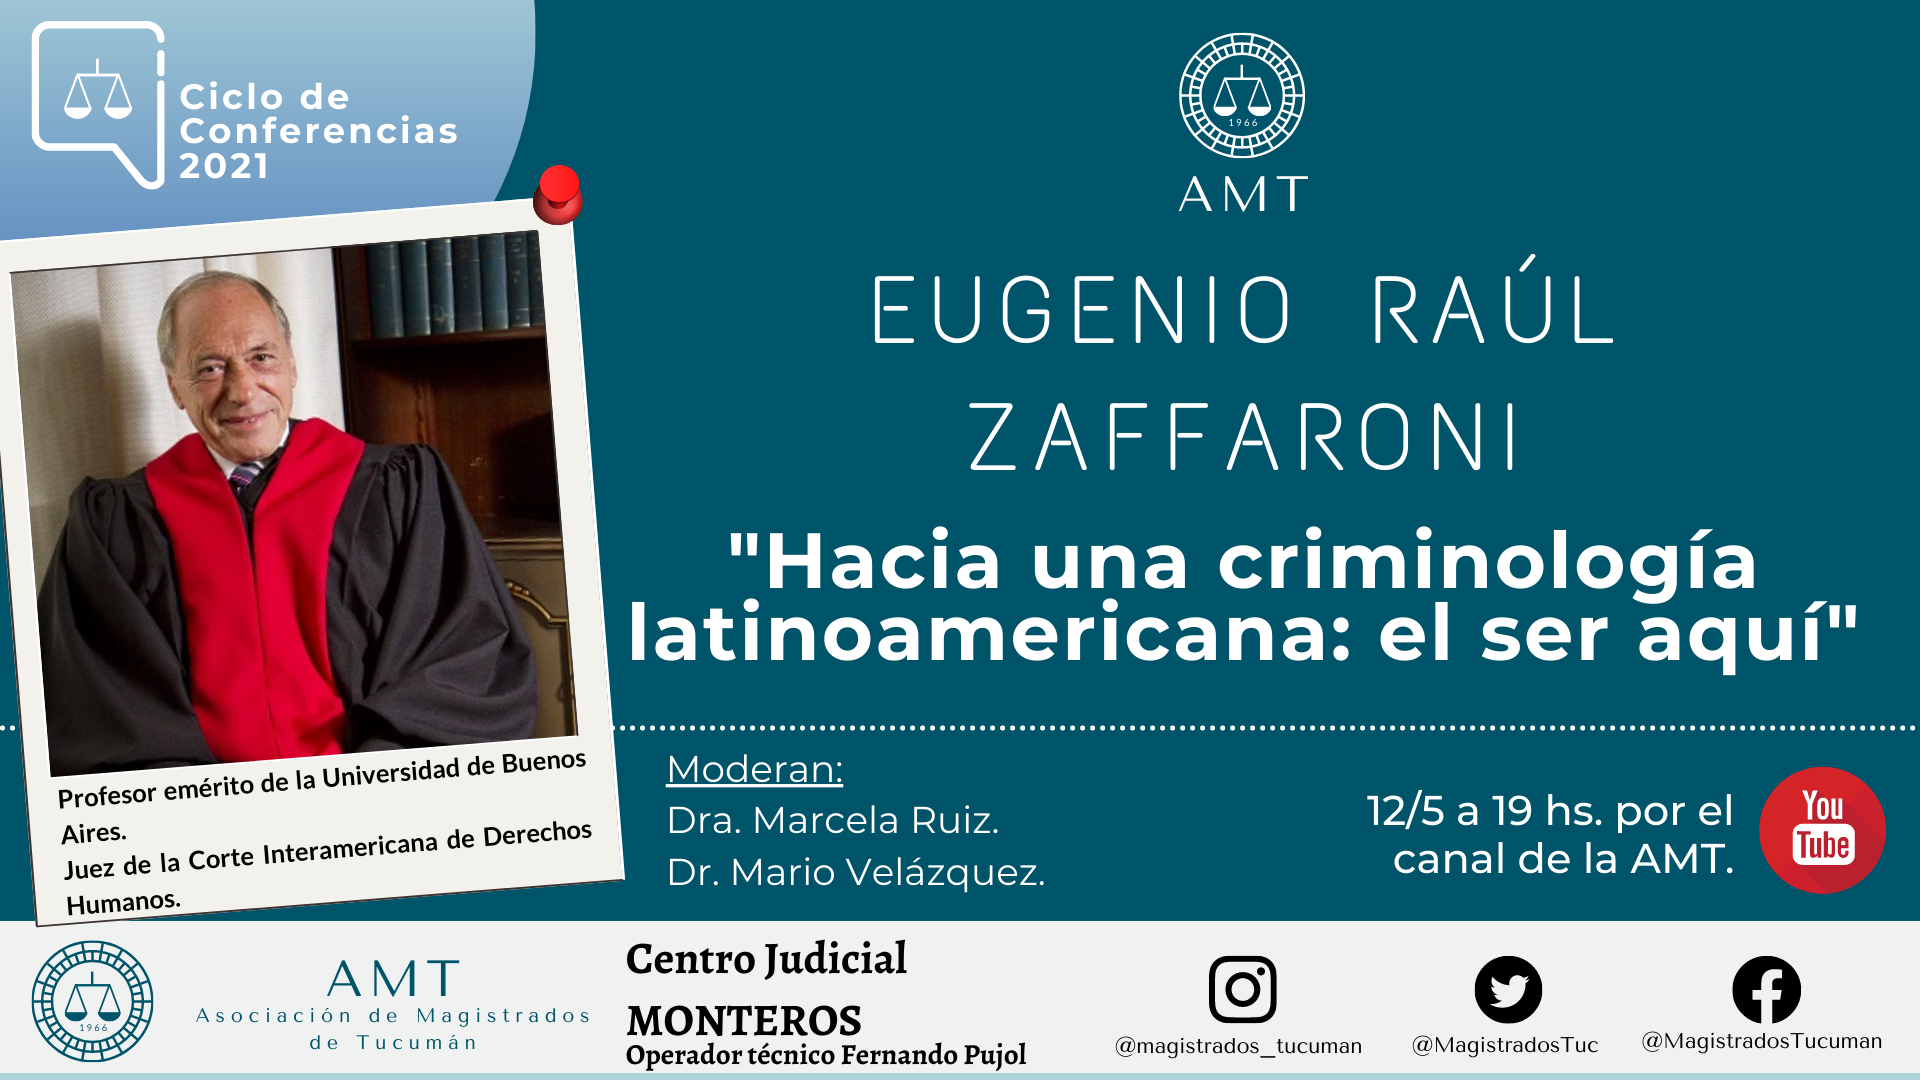 Vuelva a ver la conferencia de Eugenio Zaffaroni «Hacia una criminología latinoamericana»